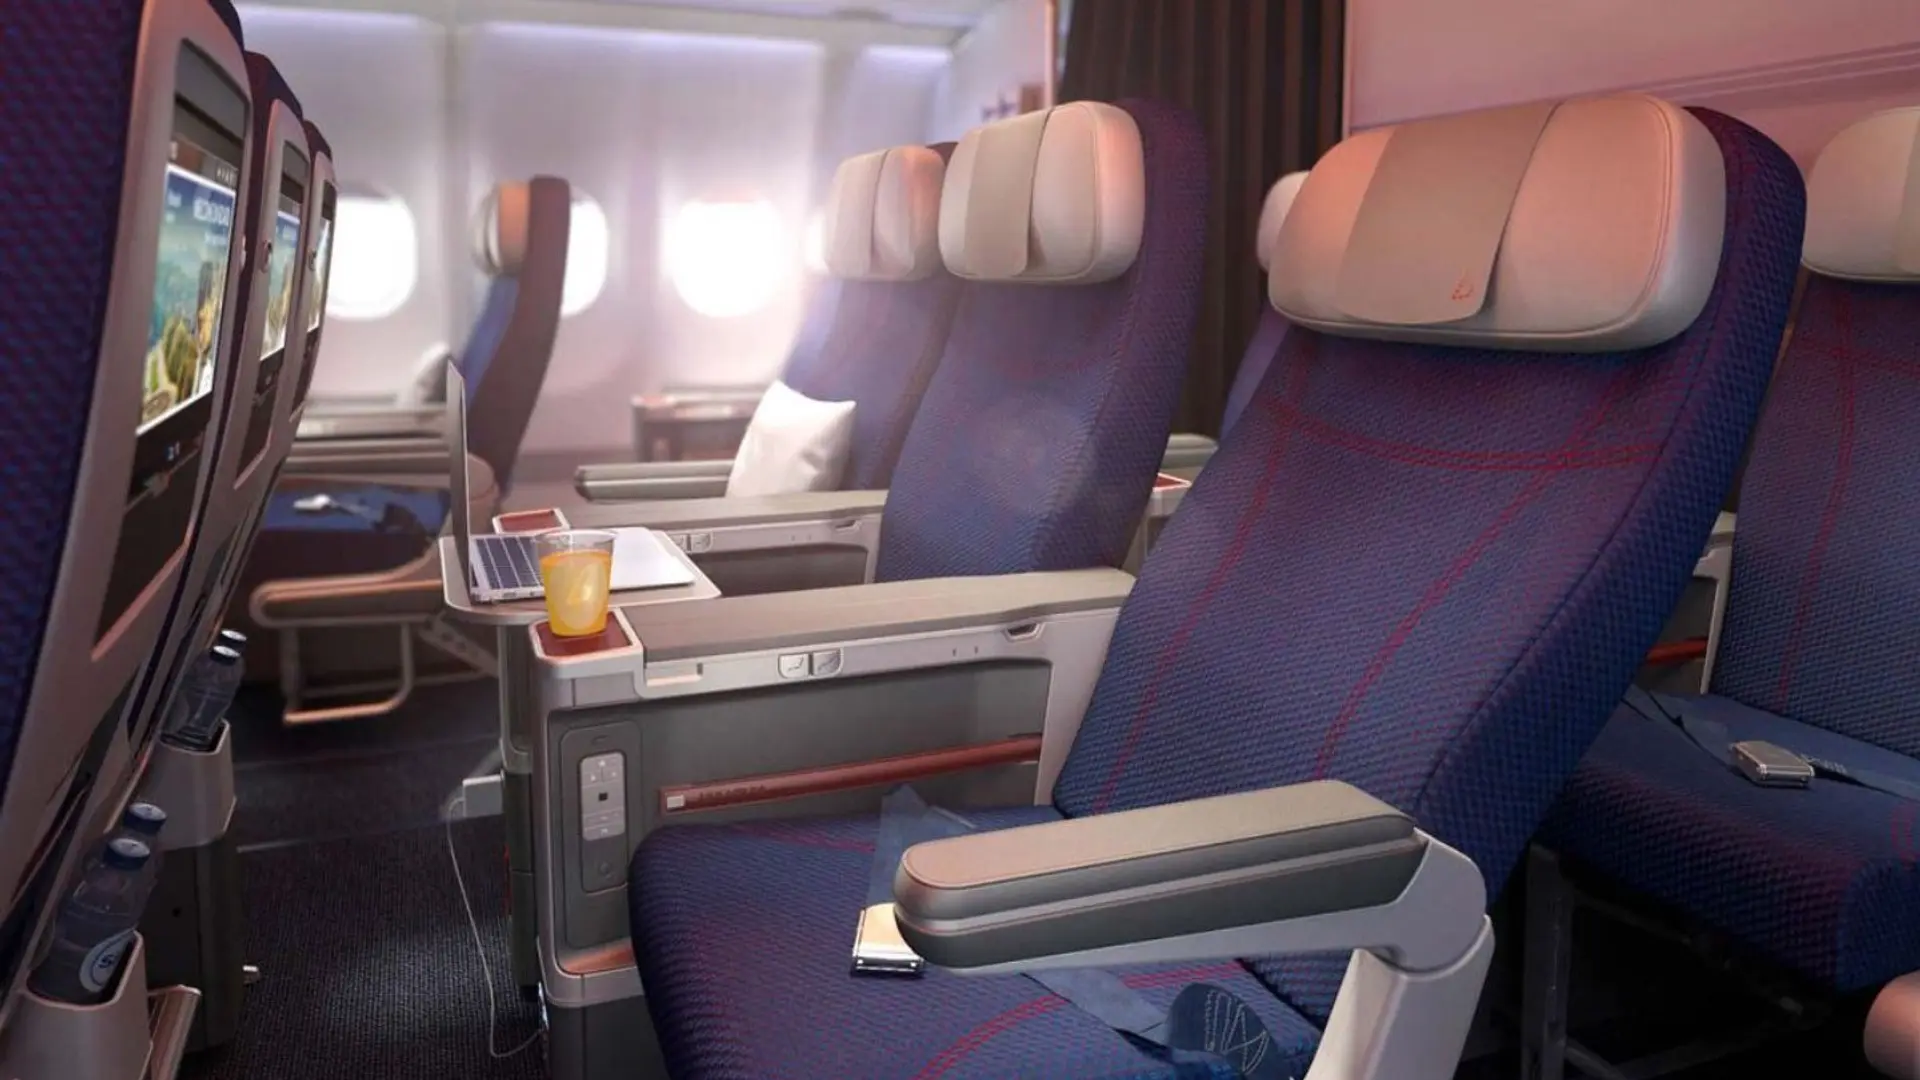 Brussels Airlines Premium Economy Seats